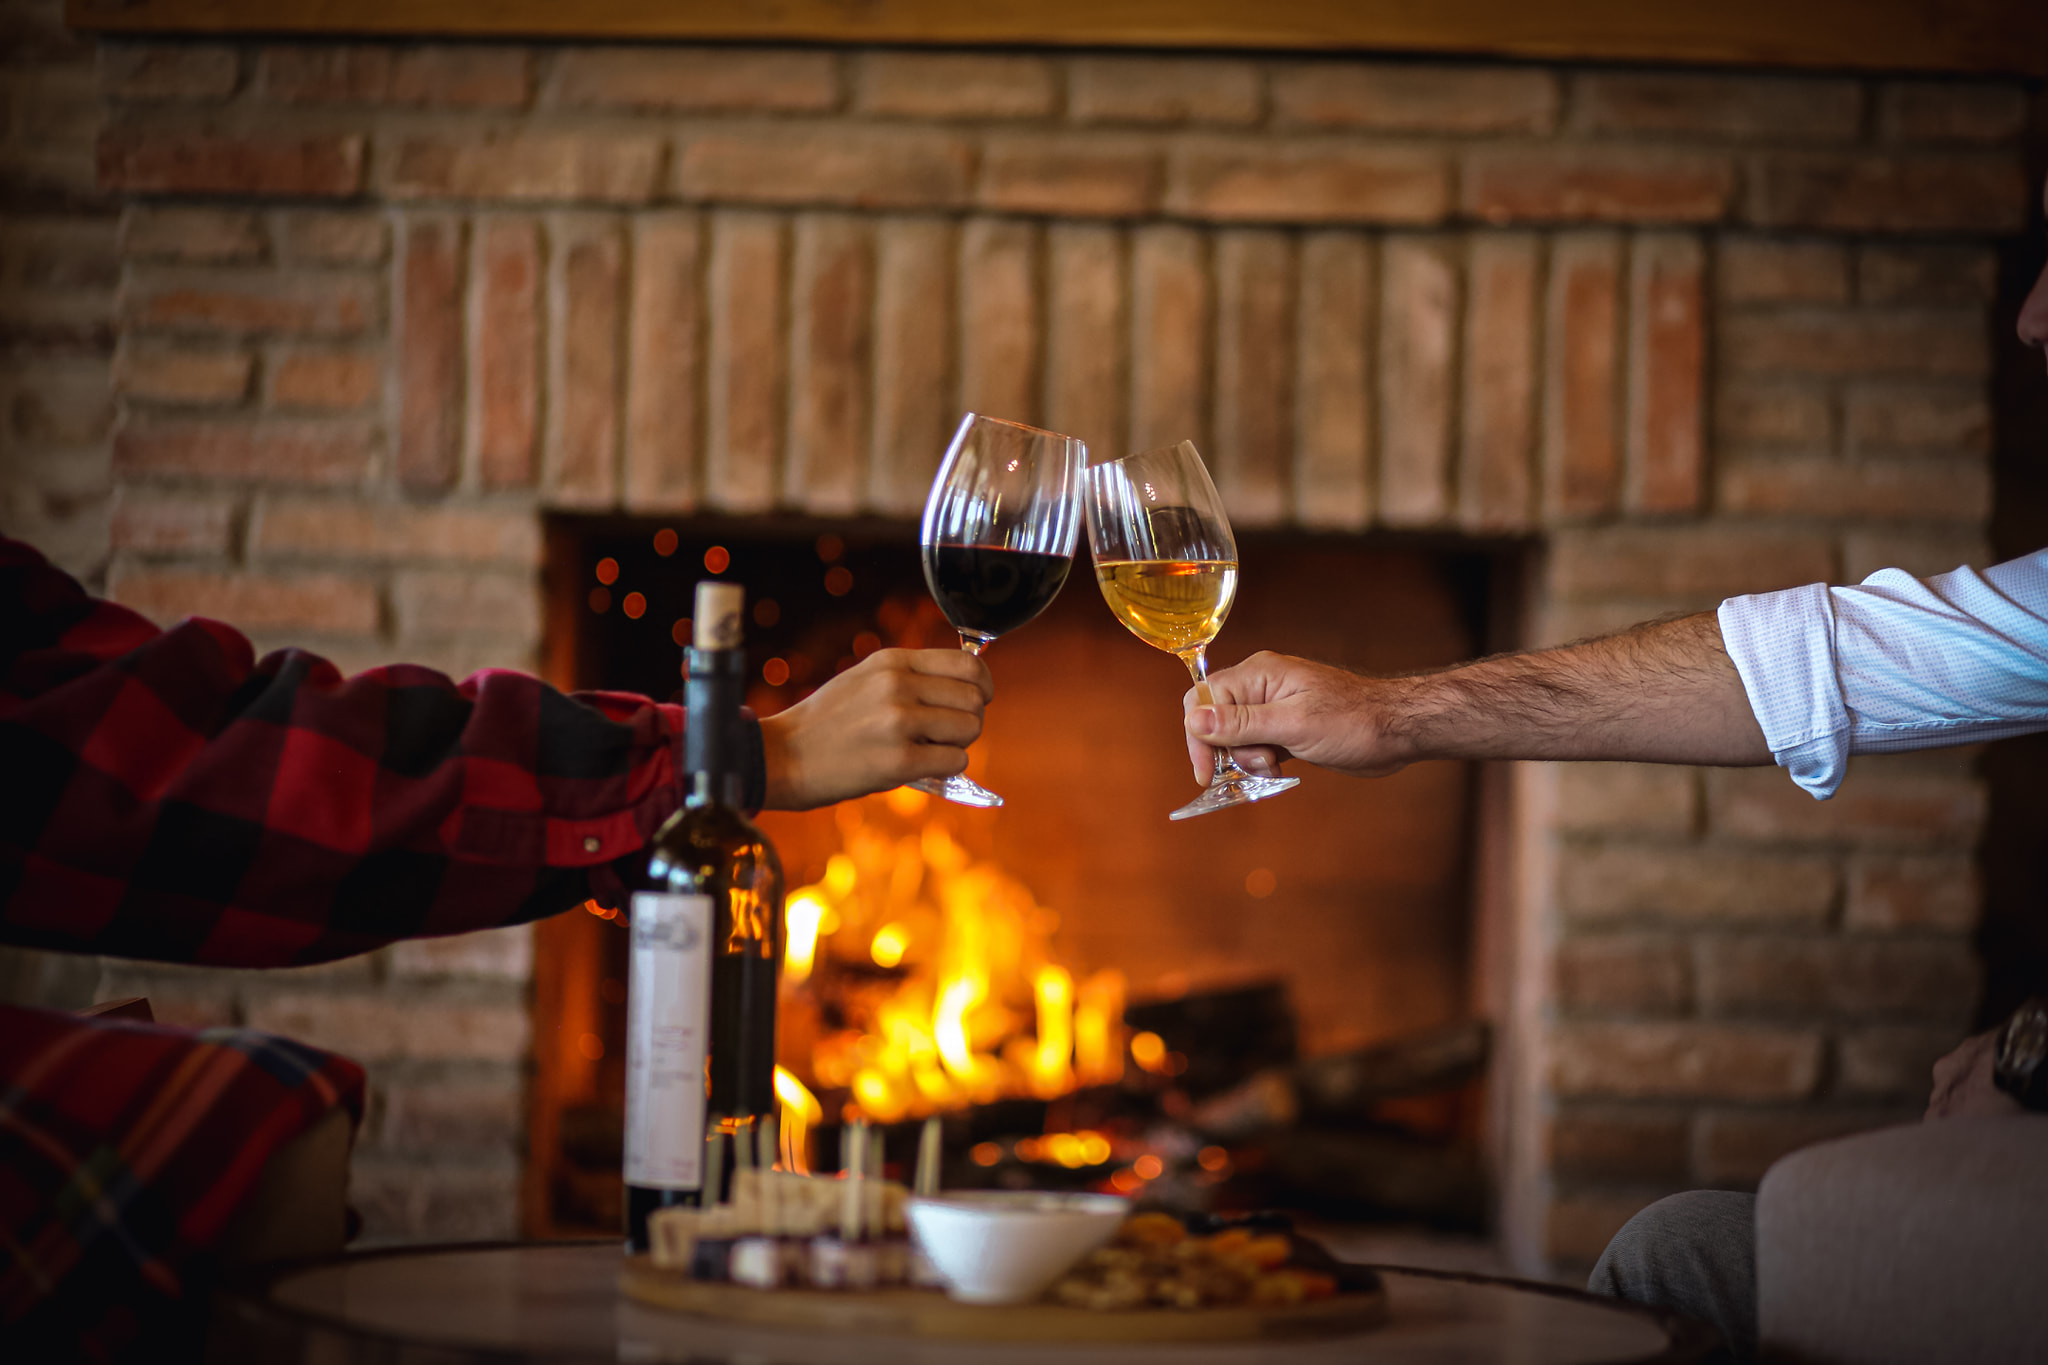 Zwei Personen stoßen mit Gläsern Schuchmann-Wein an, vor dem warmen Schein eines Kaminfeuers